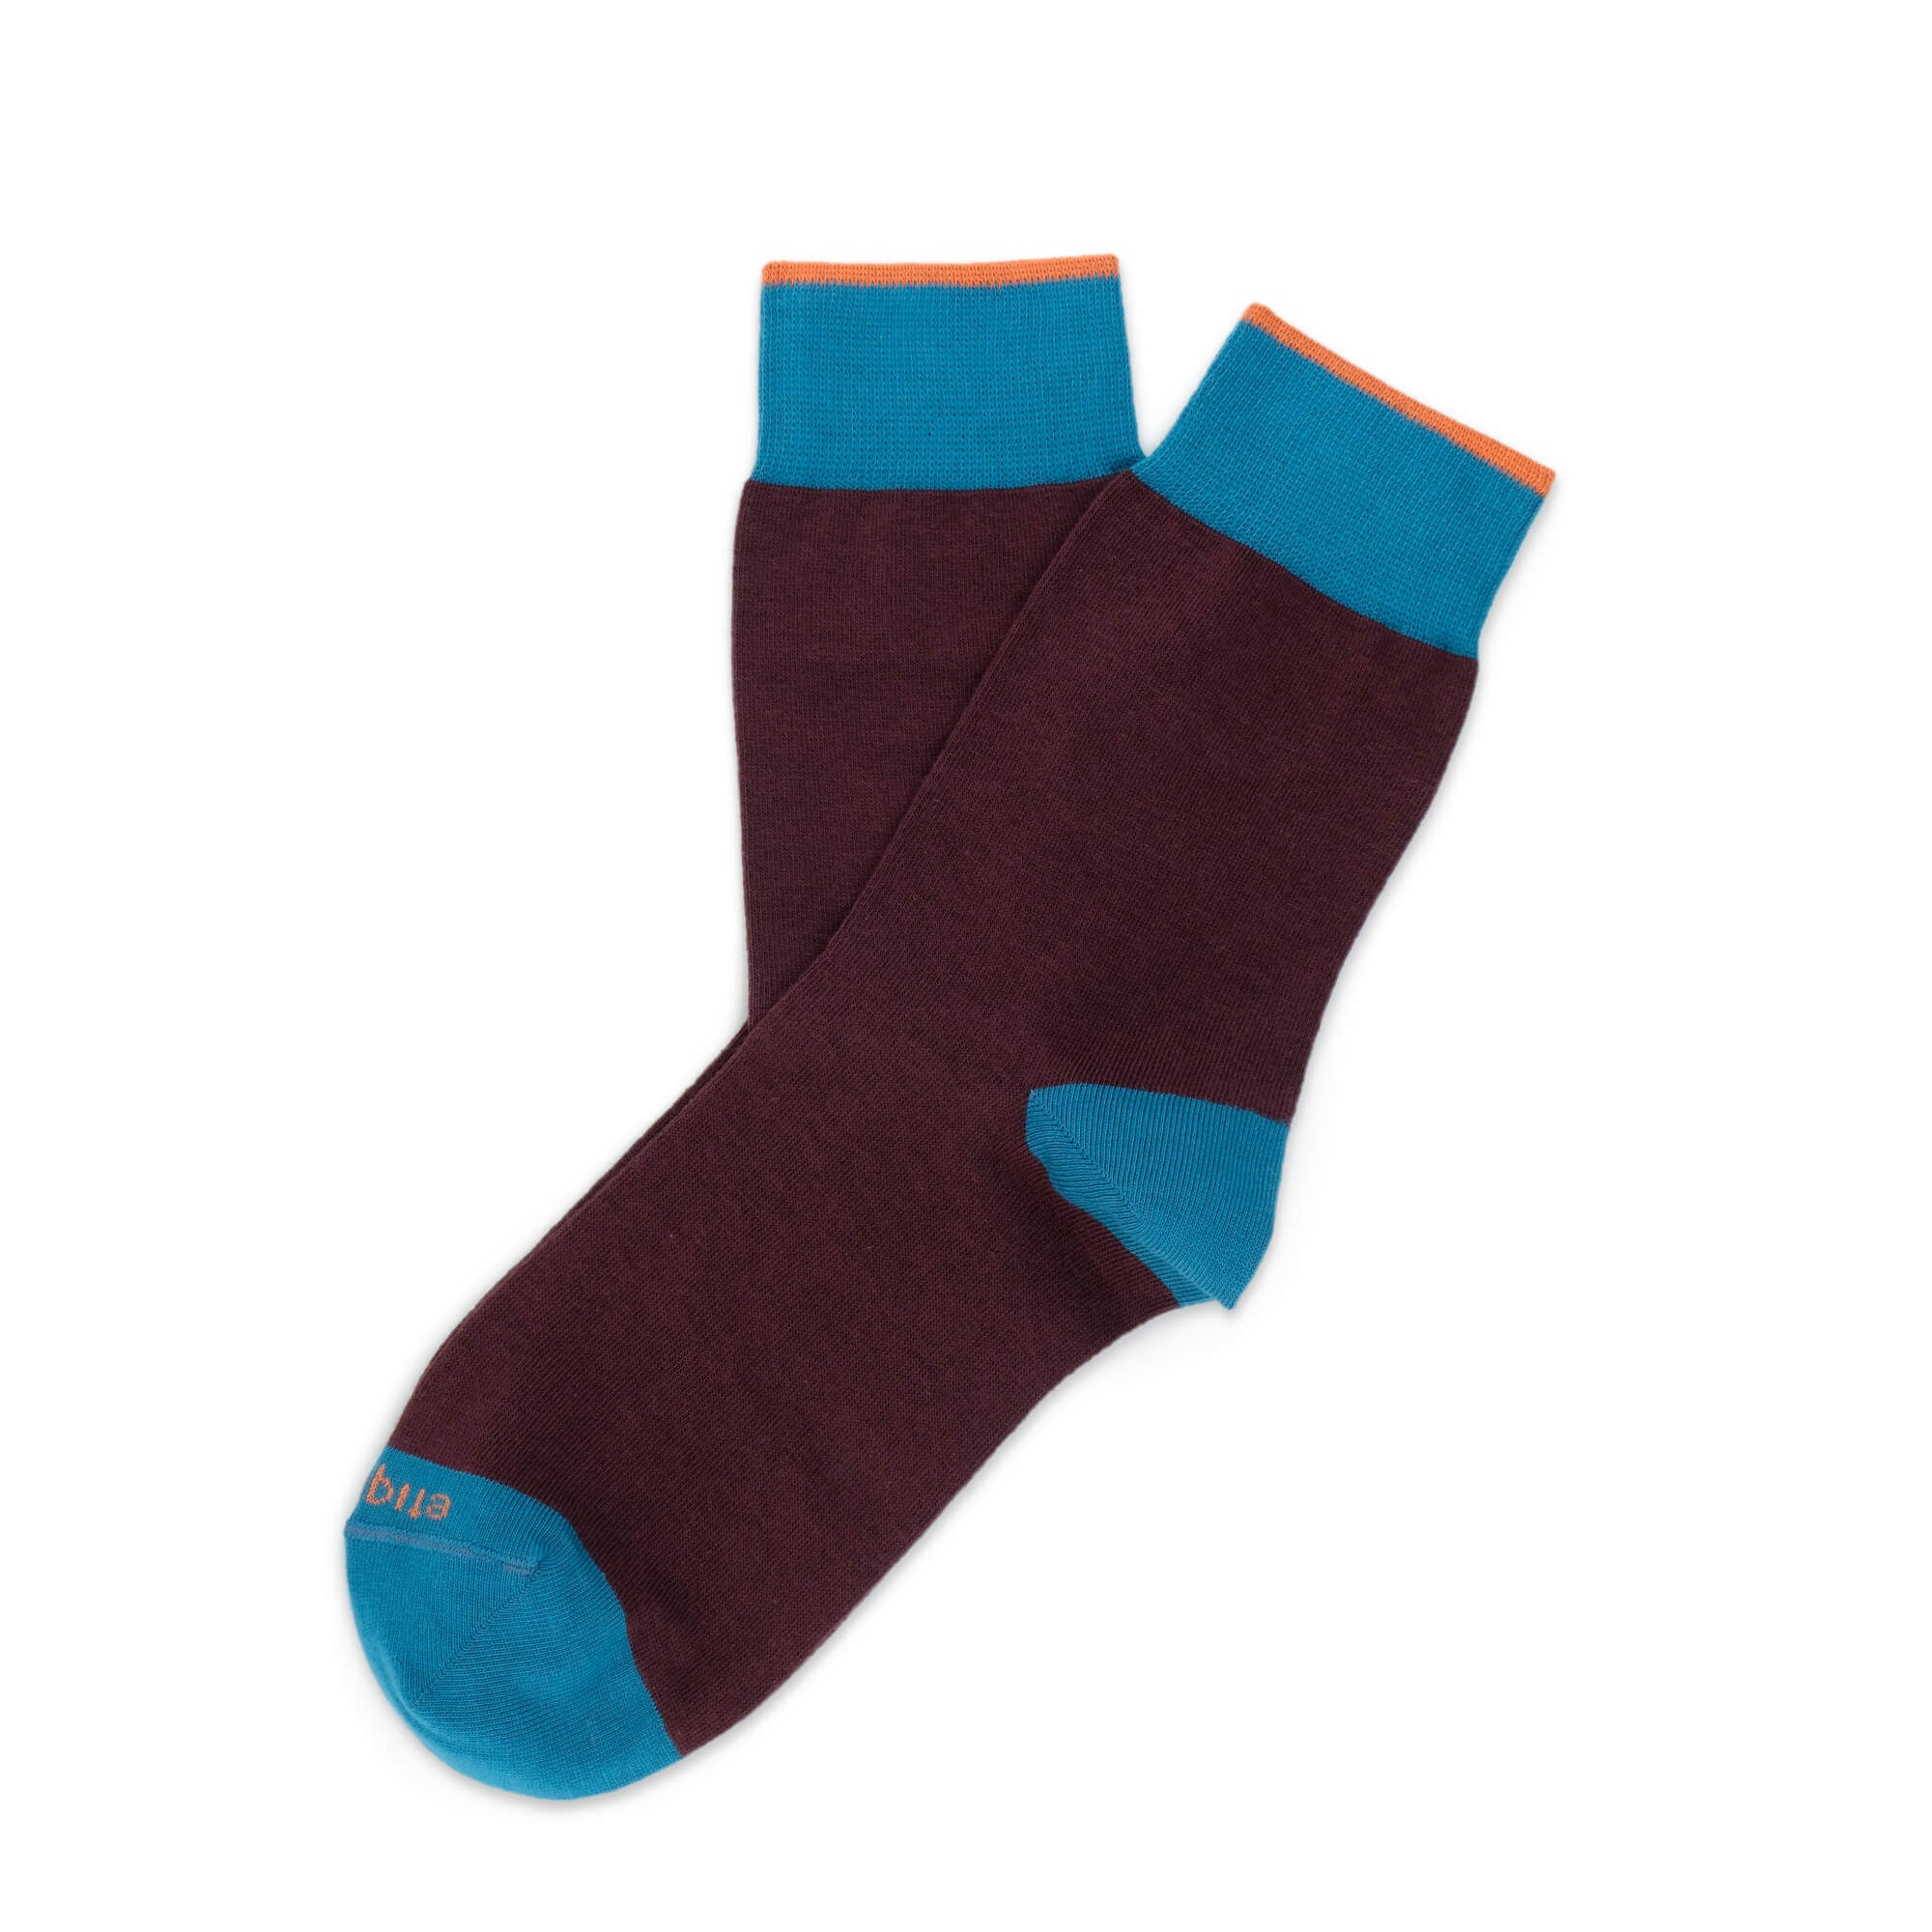 Womens Socks - Tri Pop Women's Socks - Bordeaux⎪Etiquette Clothiers